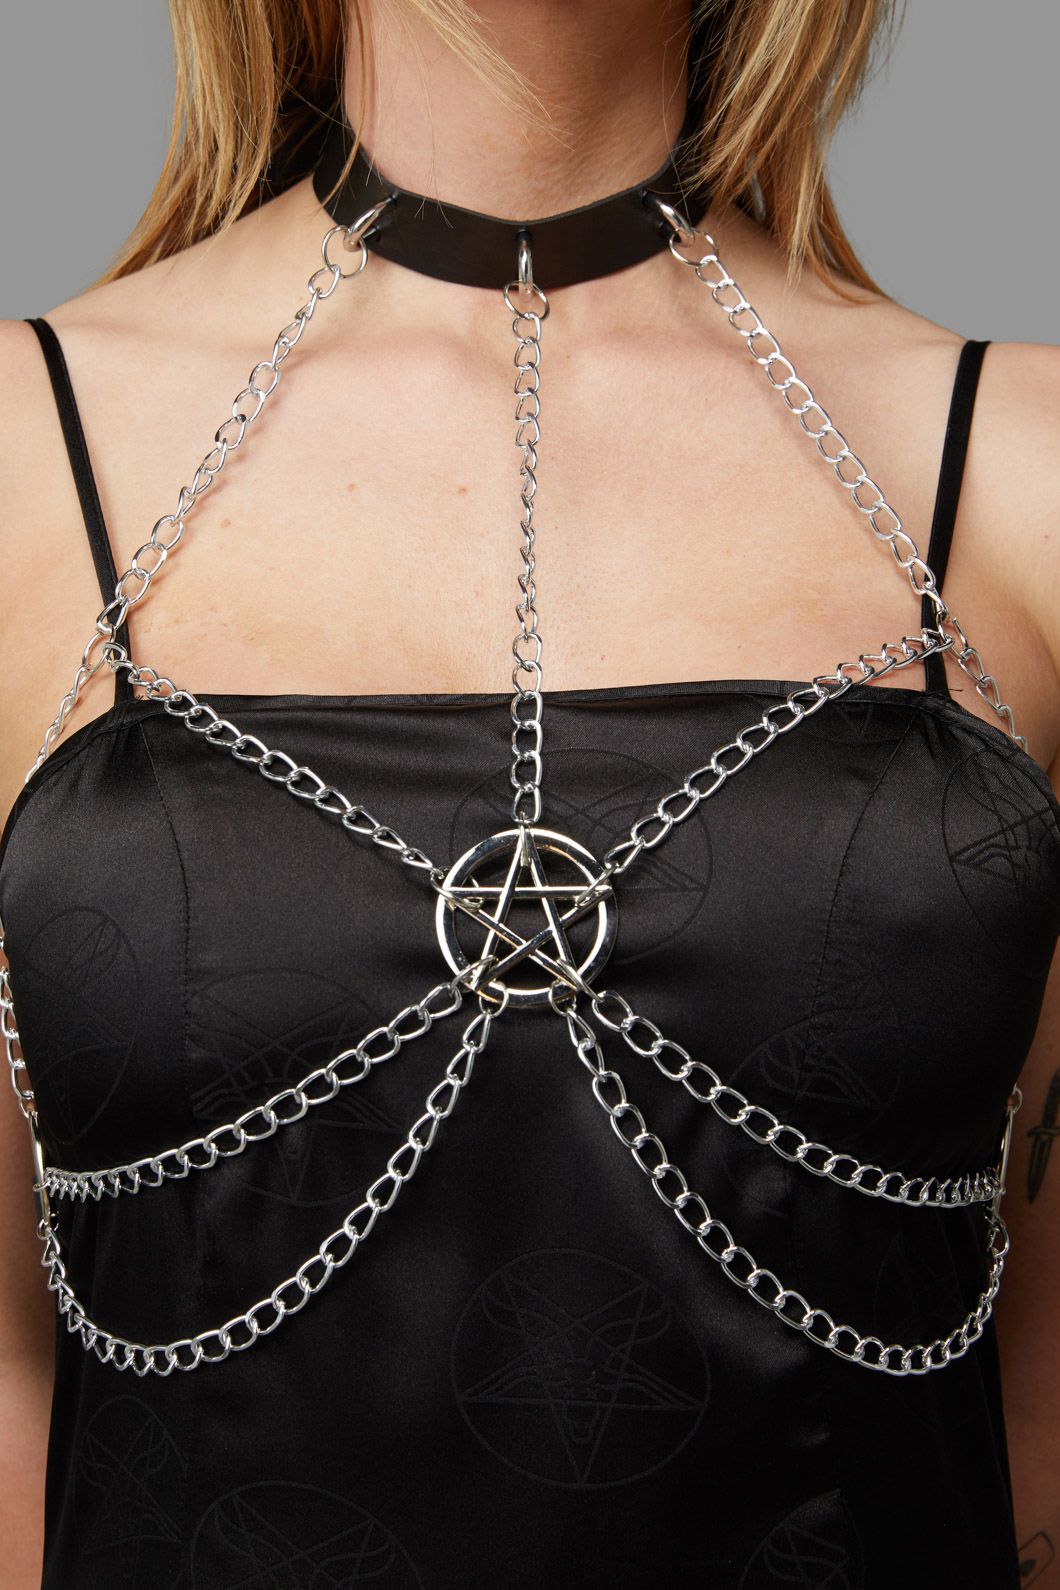 Pentagram Chain Bra Harness – Dangerfield